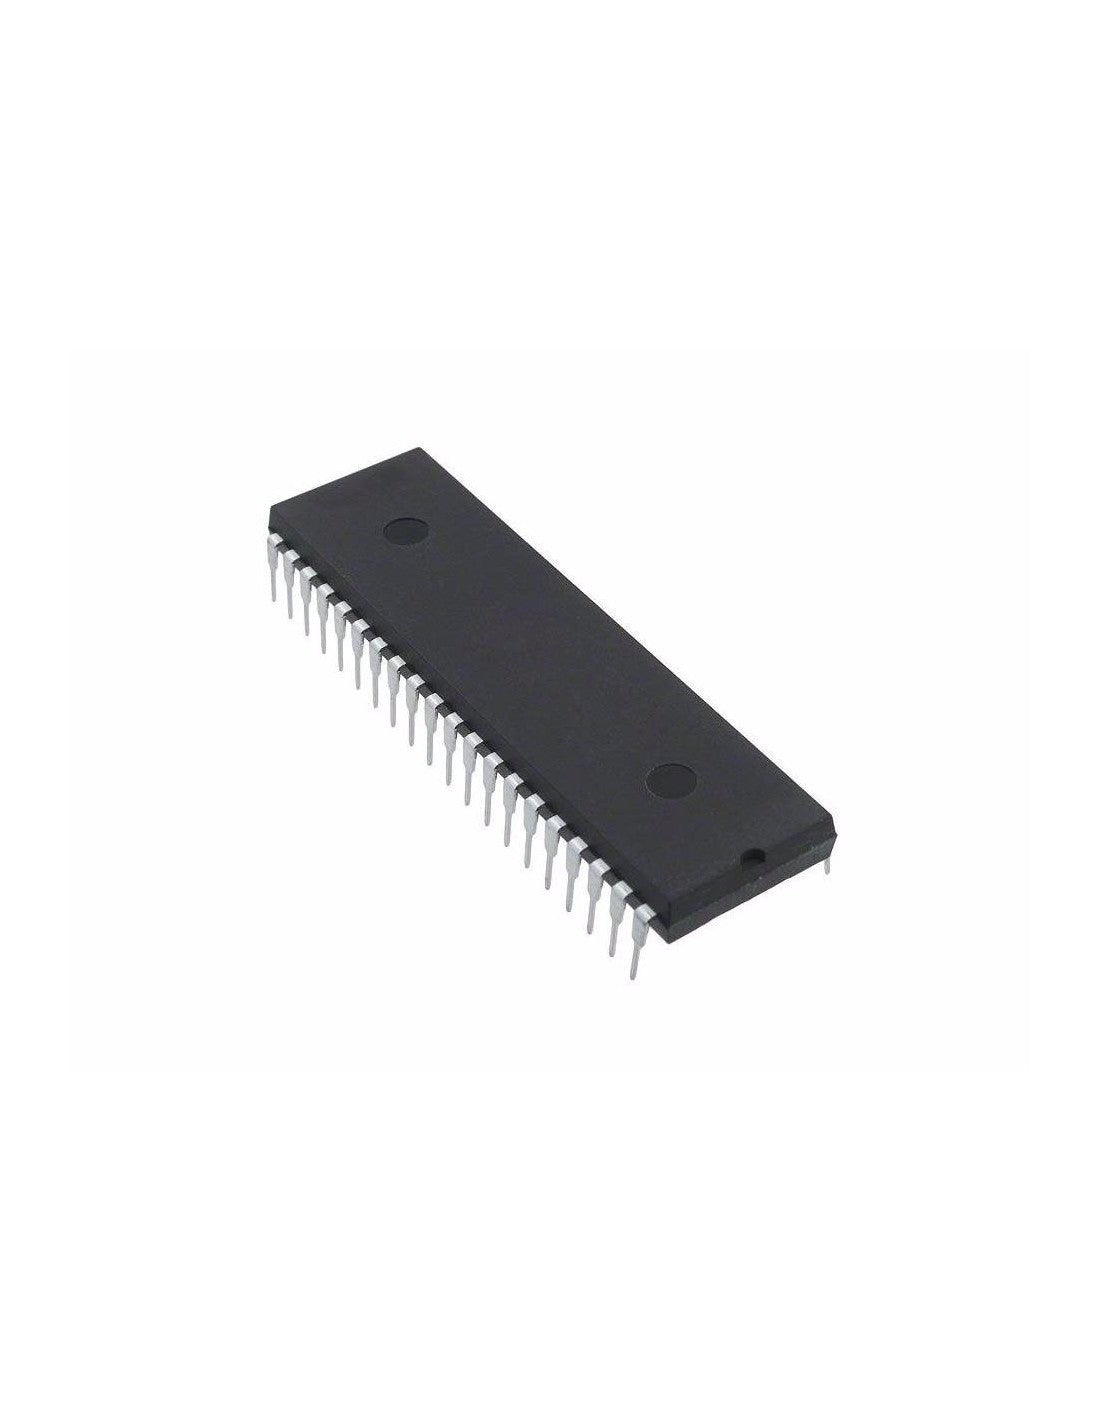 ITT SAA1296A componente integrato, circuito elettronico, transistor, 40 contatti